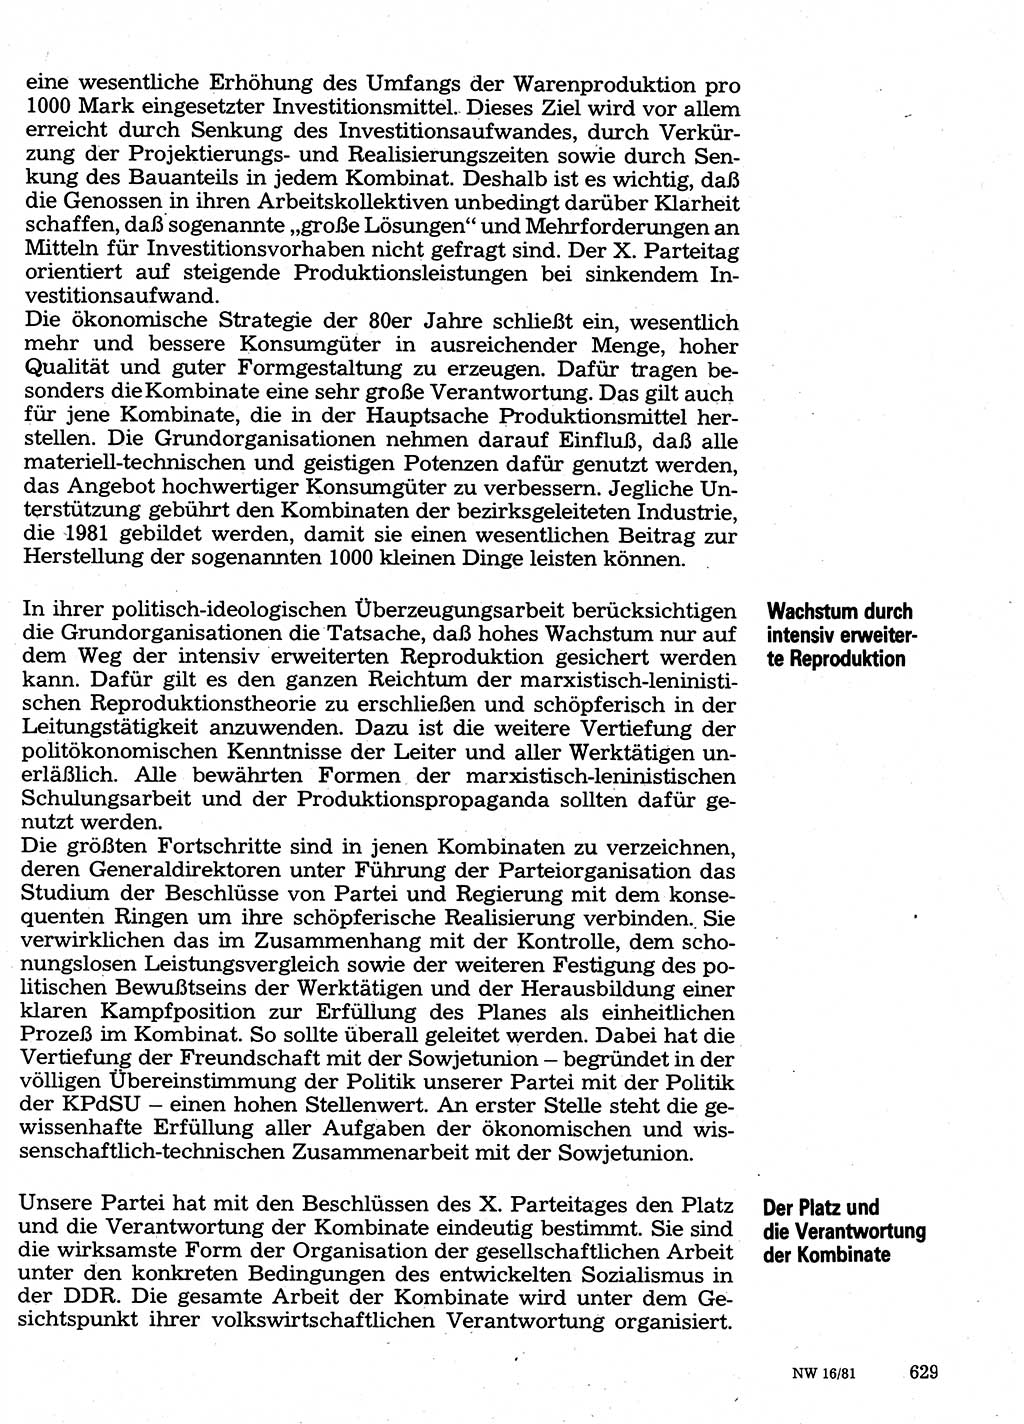 Neuer Weg (NW), Organ des Zentralkomitees (ZK) der SED (Sozialistische Einheitspartei Deutschlands) für Fragen des Parteilebens, 36. Jahrgang [Deutsche Demokratische Republik (DDR)] 1981, Seite 629 (NW ZK SED DDR 1981, S. 629)